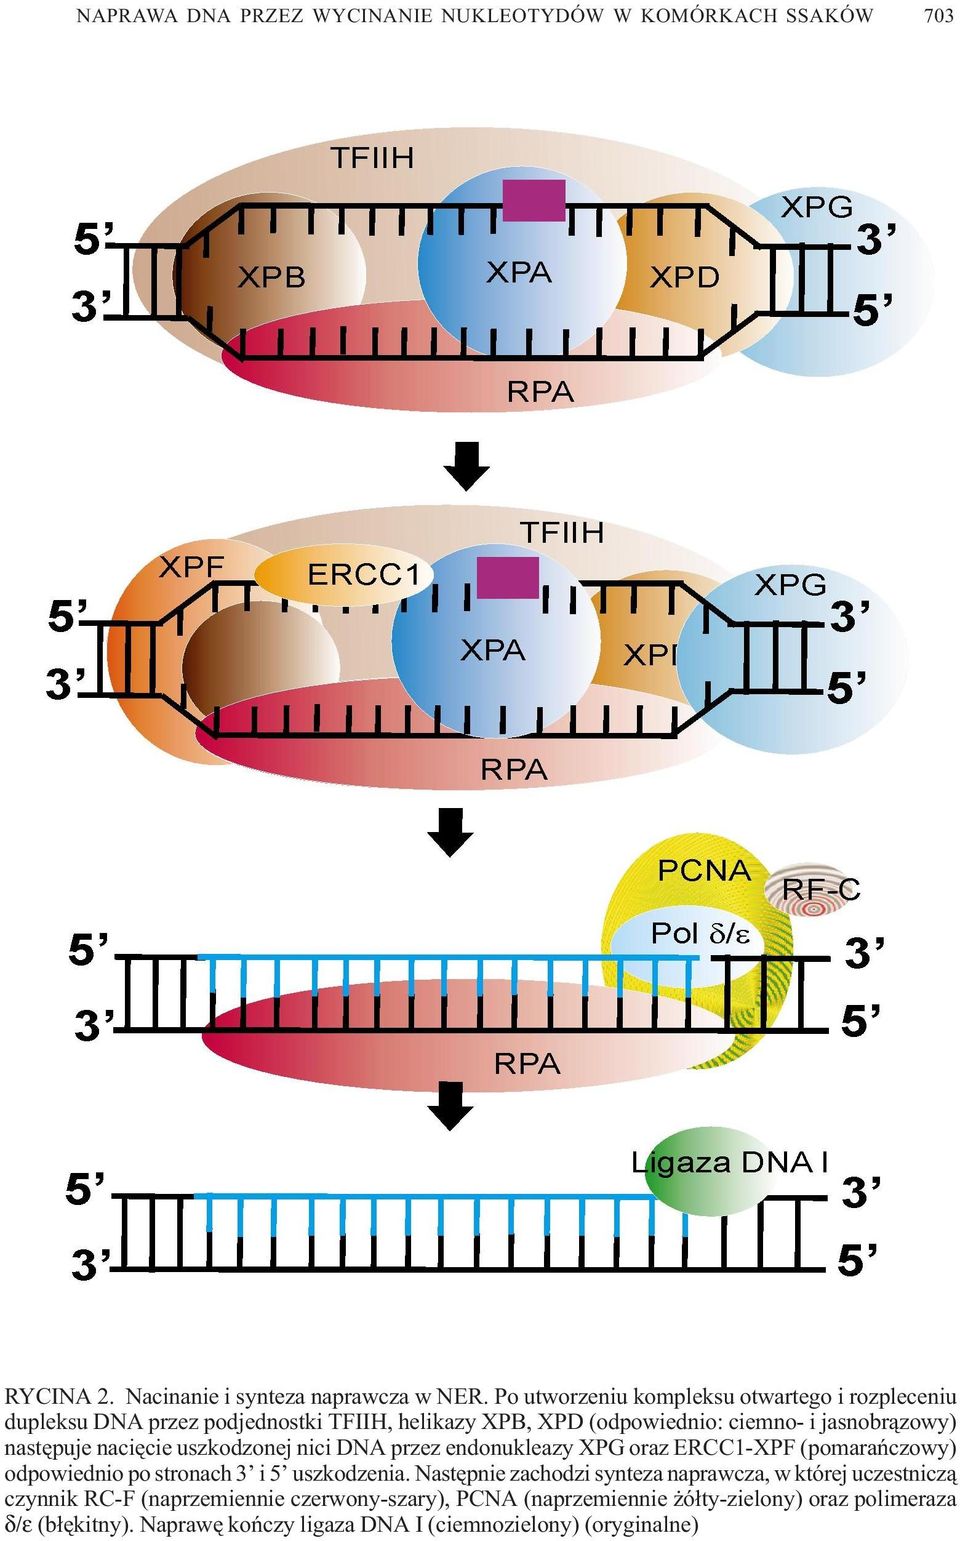 jasnobr¹zowy) nastêpuje naciêcie uszkodzonej nici DNA przez endonukleazy XPG oraz ERCC1-XPF (pomarañczowy) odpowiednio po stronach 3 i 5